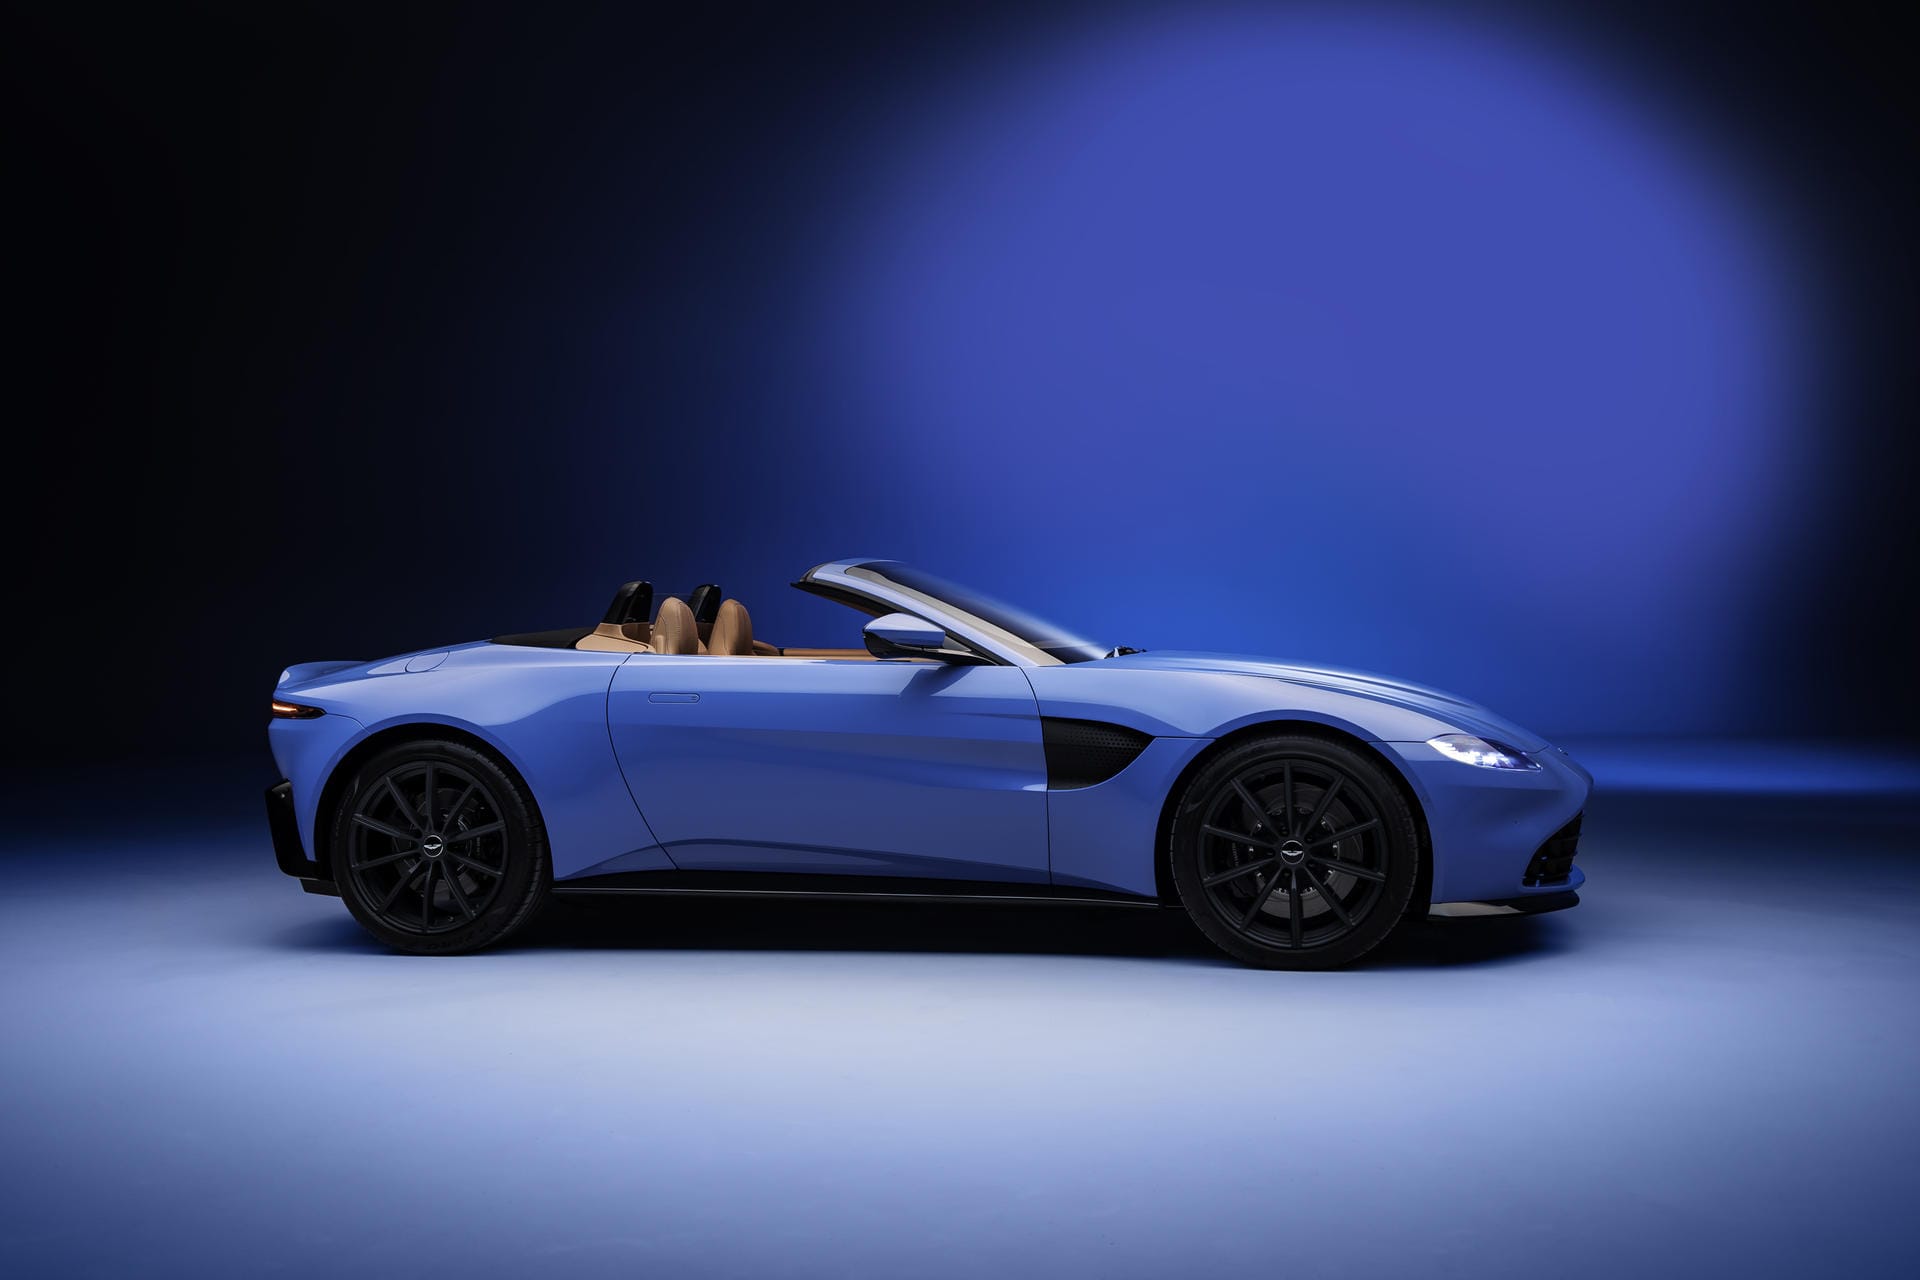 Aston Martin baut den V8-Sportwagen Vantage für 157.300 Euro auch als Roadster mit 375 kW/510 PS.